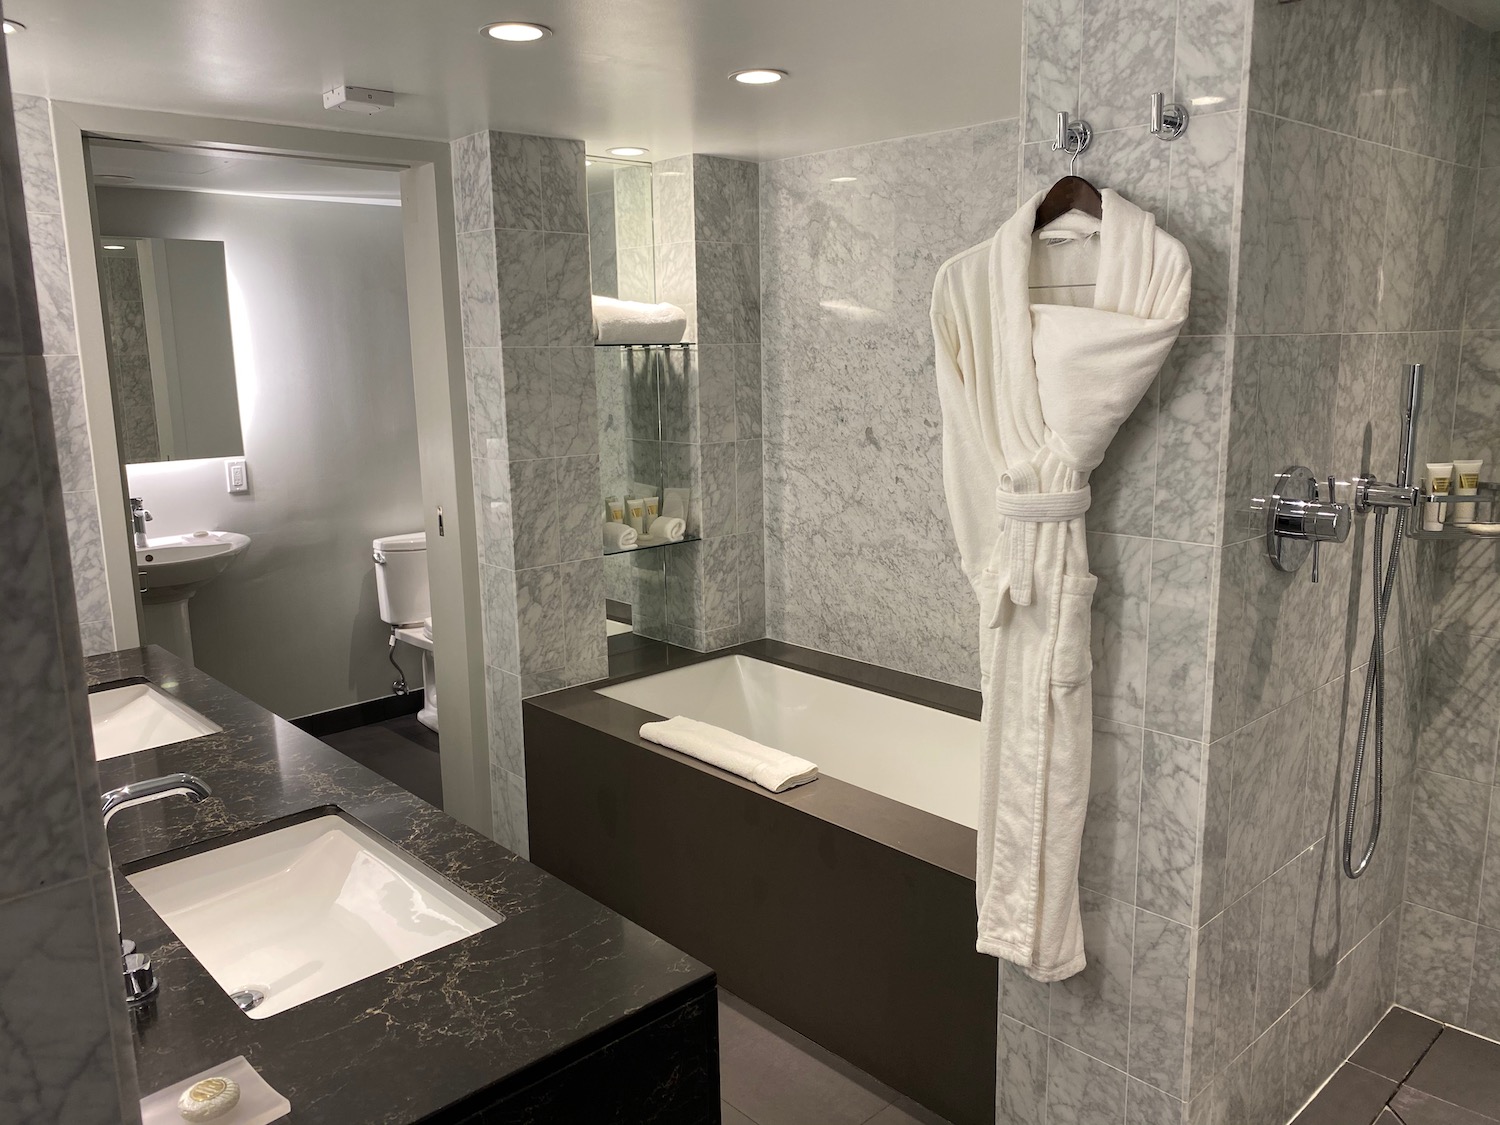 a bathroom with a bathrobe and tub